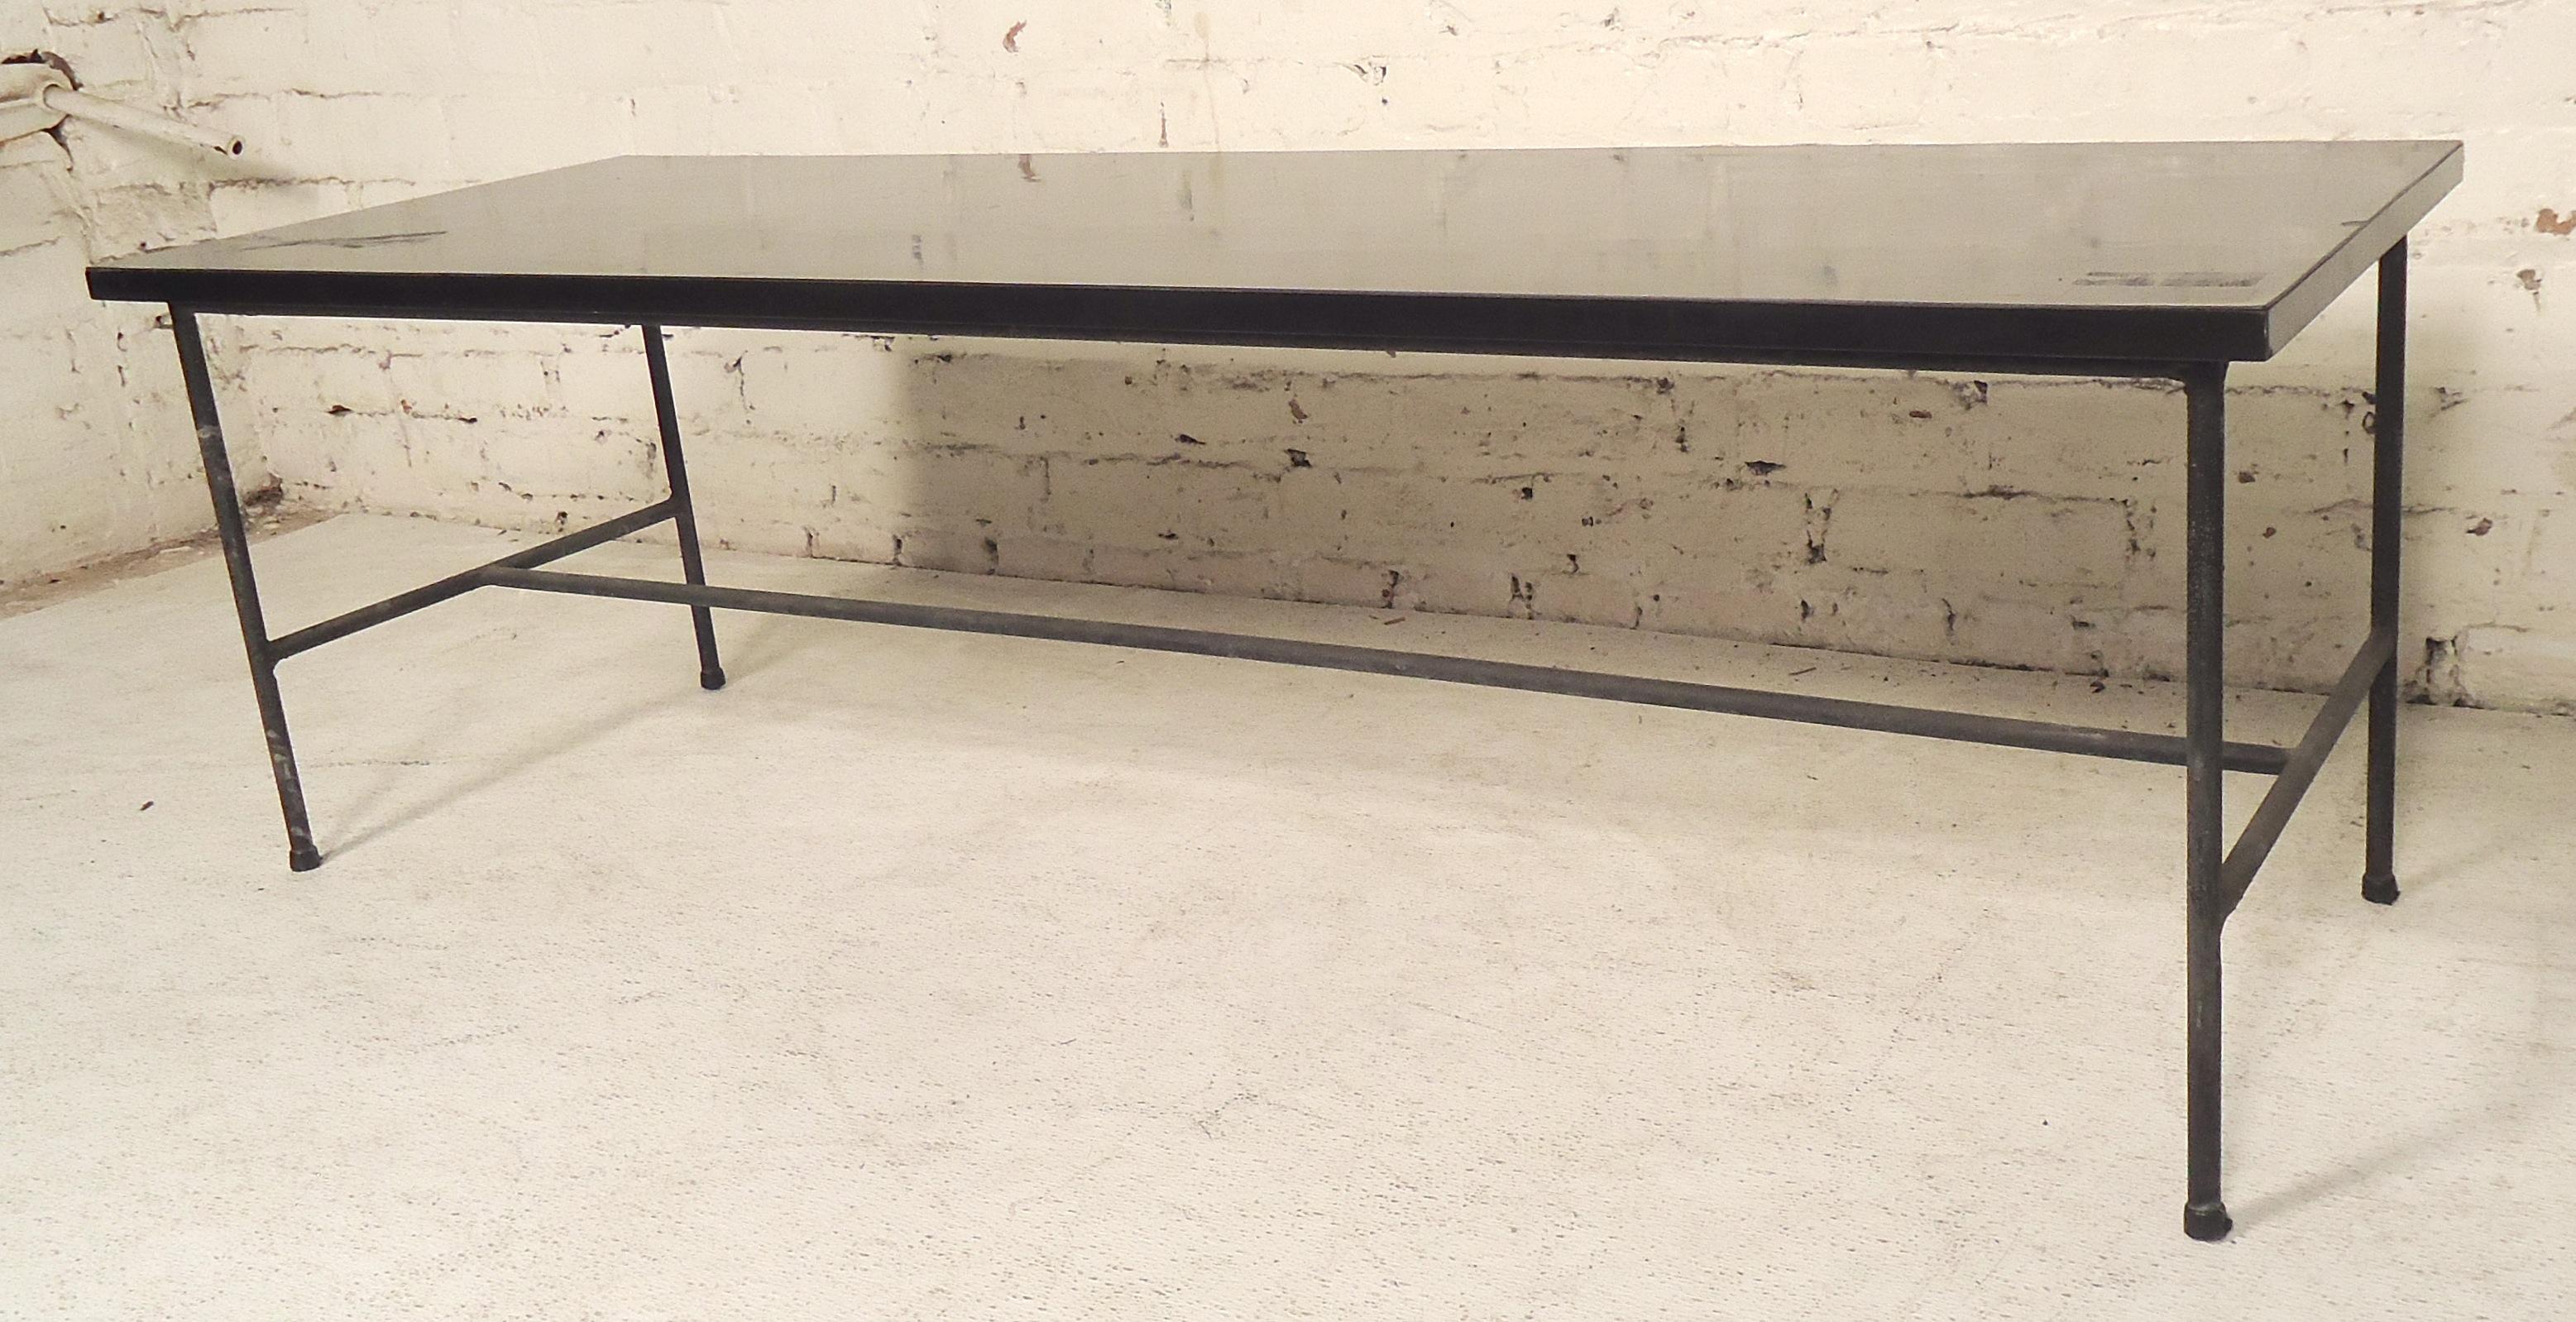 Schwarzer Tisch mit Laminatplatte und Eisengestell im Stil von Pierre Guariche. Ideal für Sitzgelegenheiten im Eingangsbereich.

(Bitte bestätigen Sie den Standort des Artikels - NY oder NJ - mit dem Händler).
 